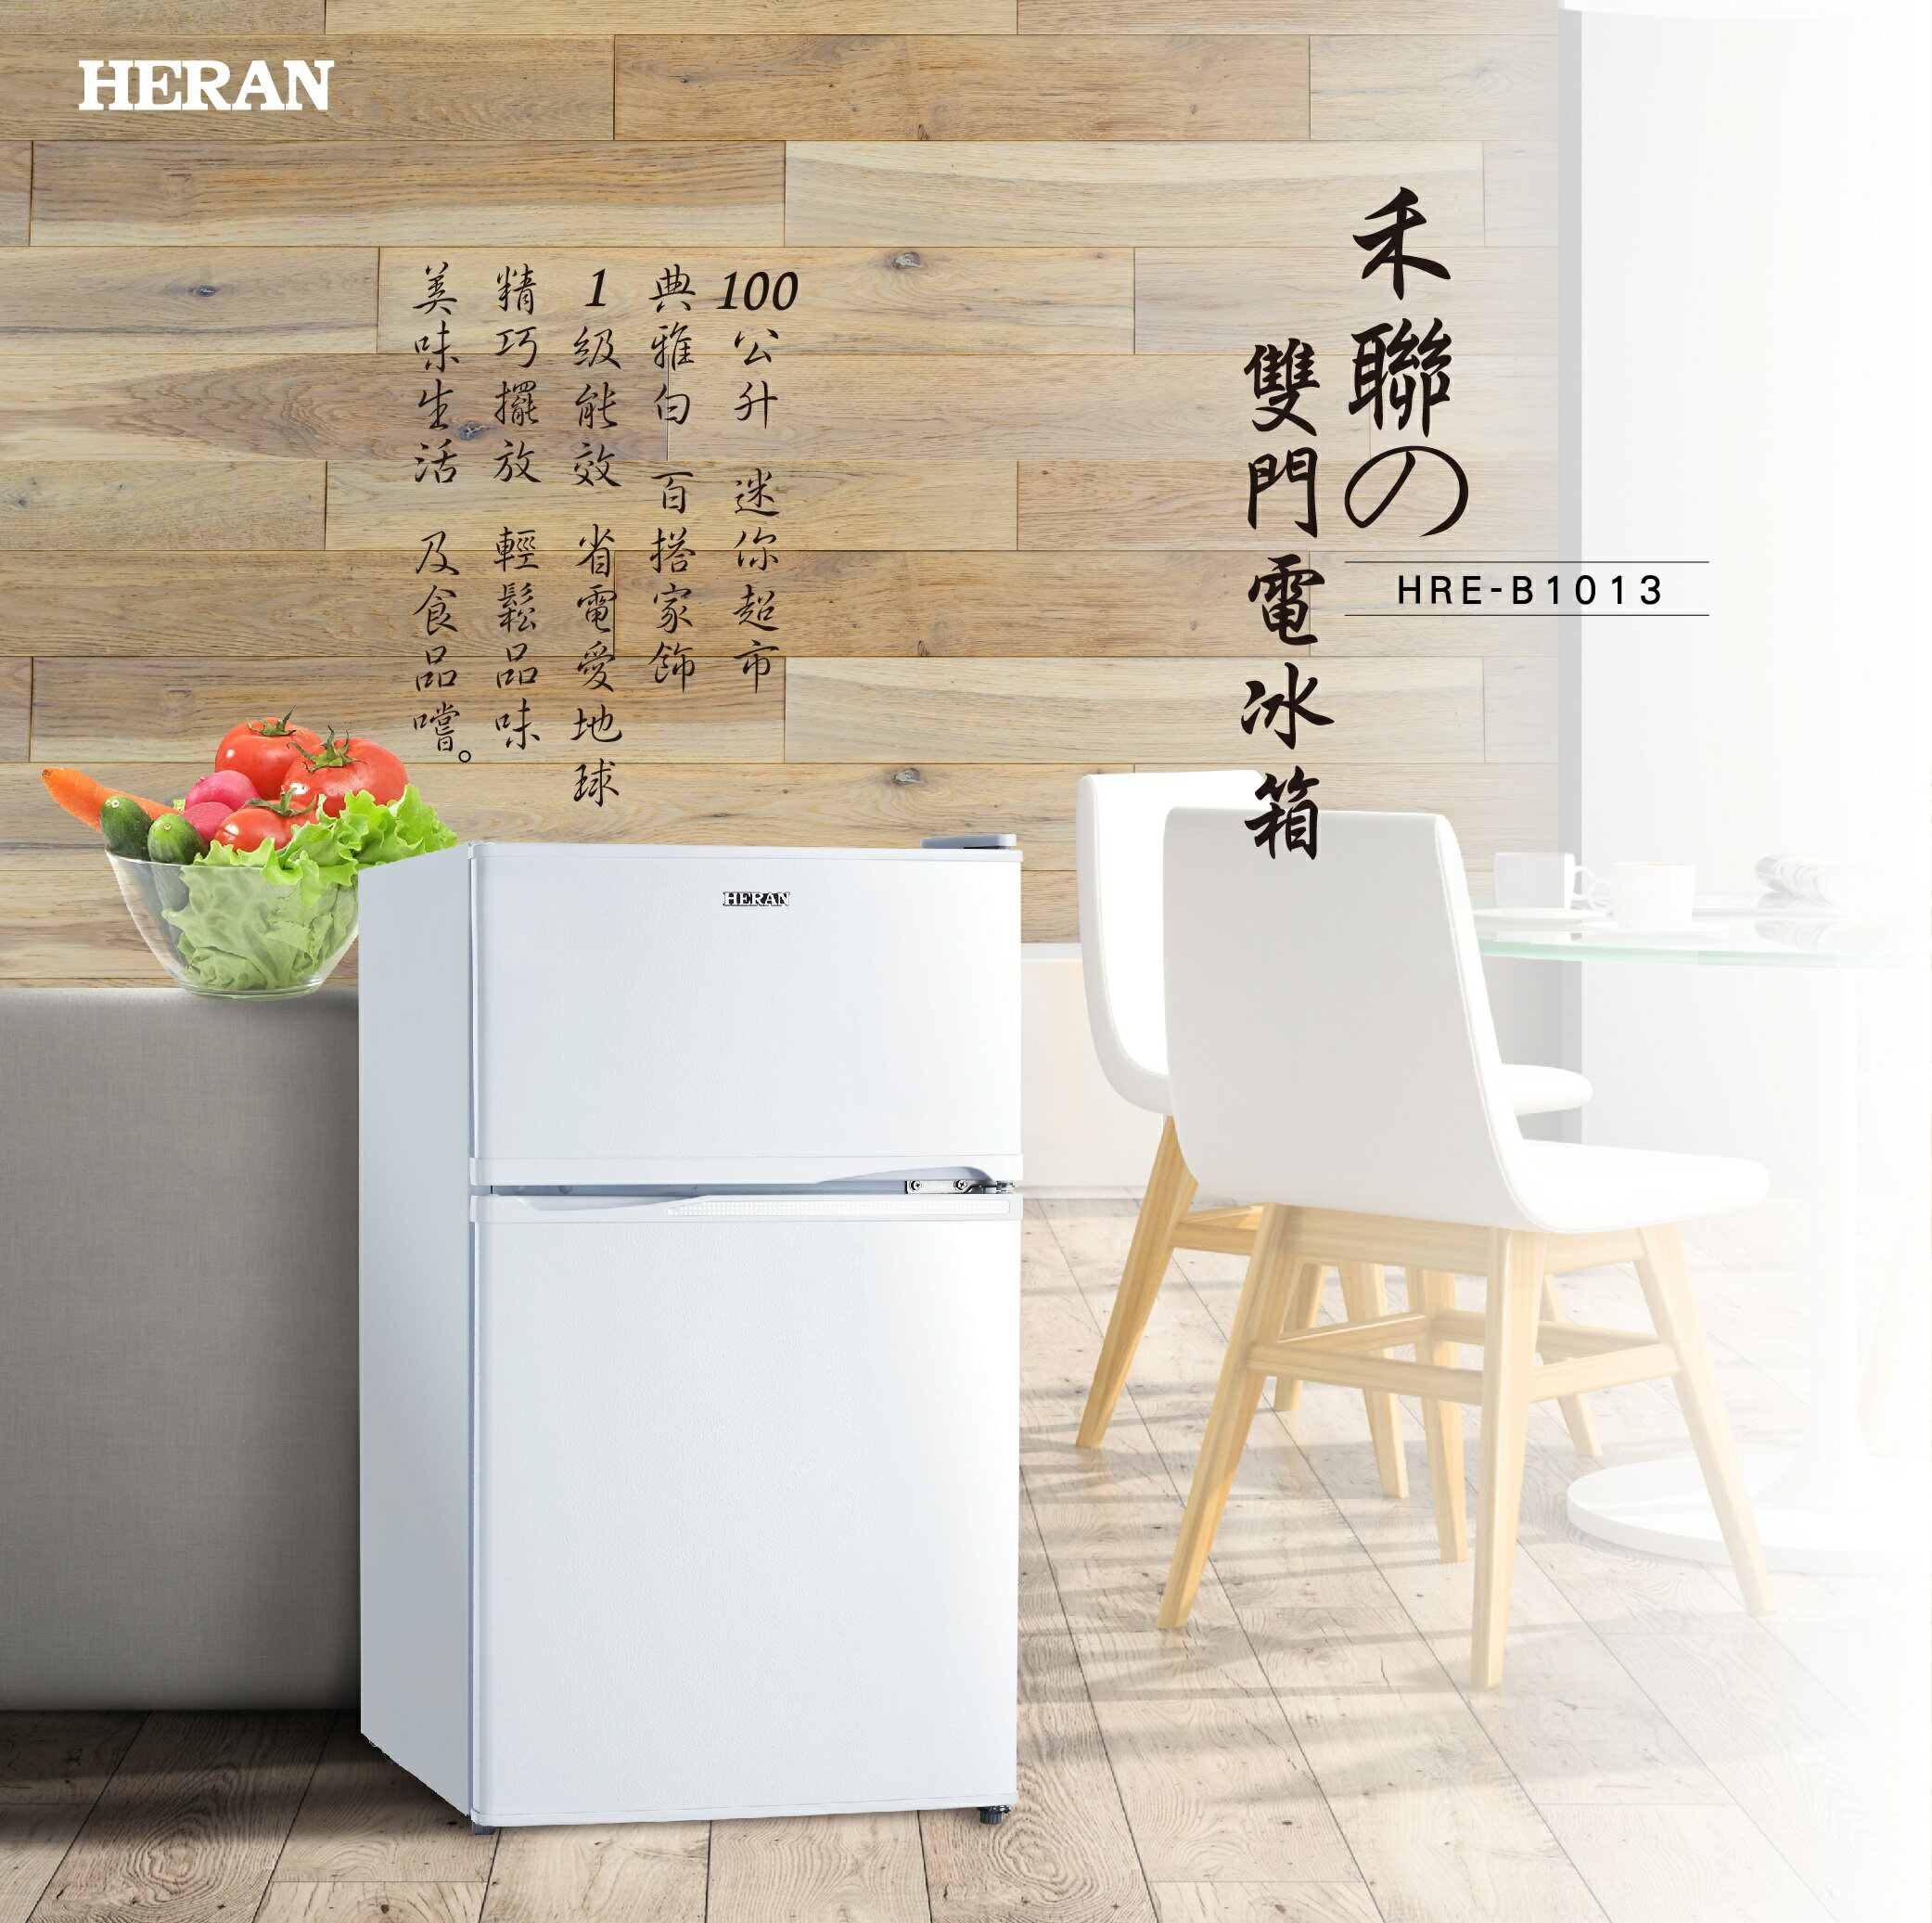 禾聯 HERAN HRE-B1013 100L 雙門電冰箱 移動式玻璃層架 隱藏式把手設計 分層冷凍空間 獨立蔬果室 4